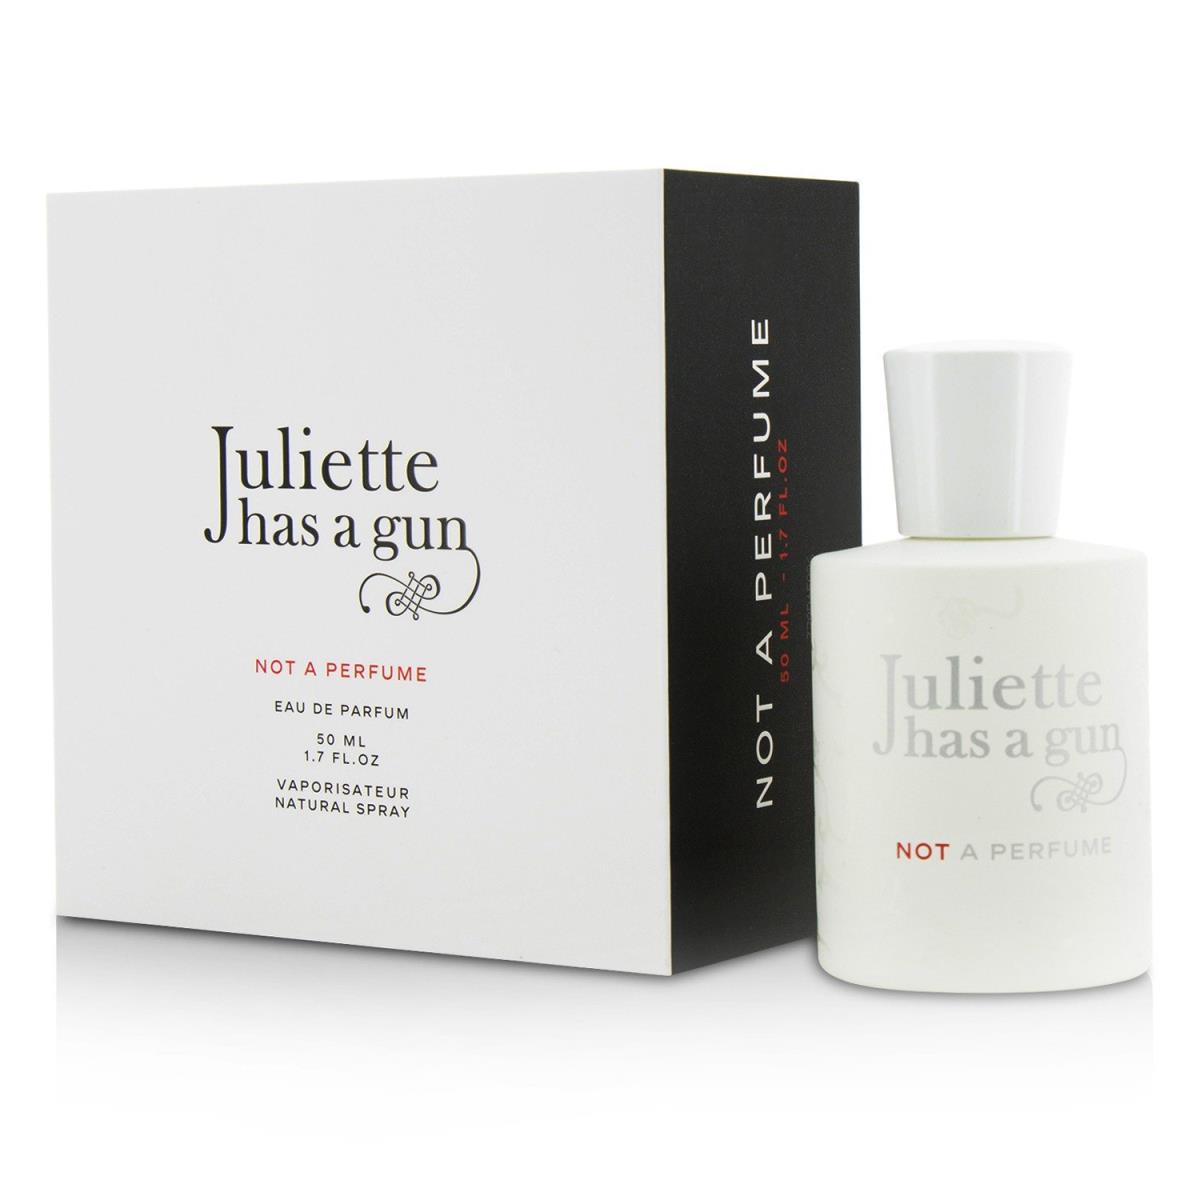 Juliette Has a Gun perfume,cologne,fragrance,parfum  5